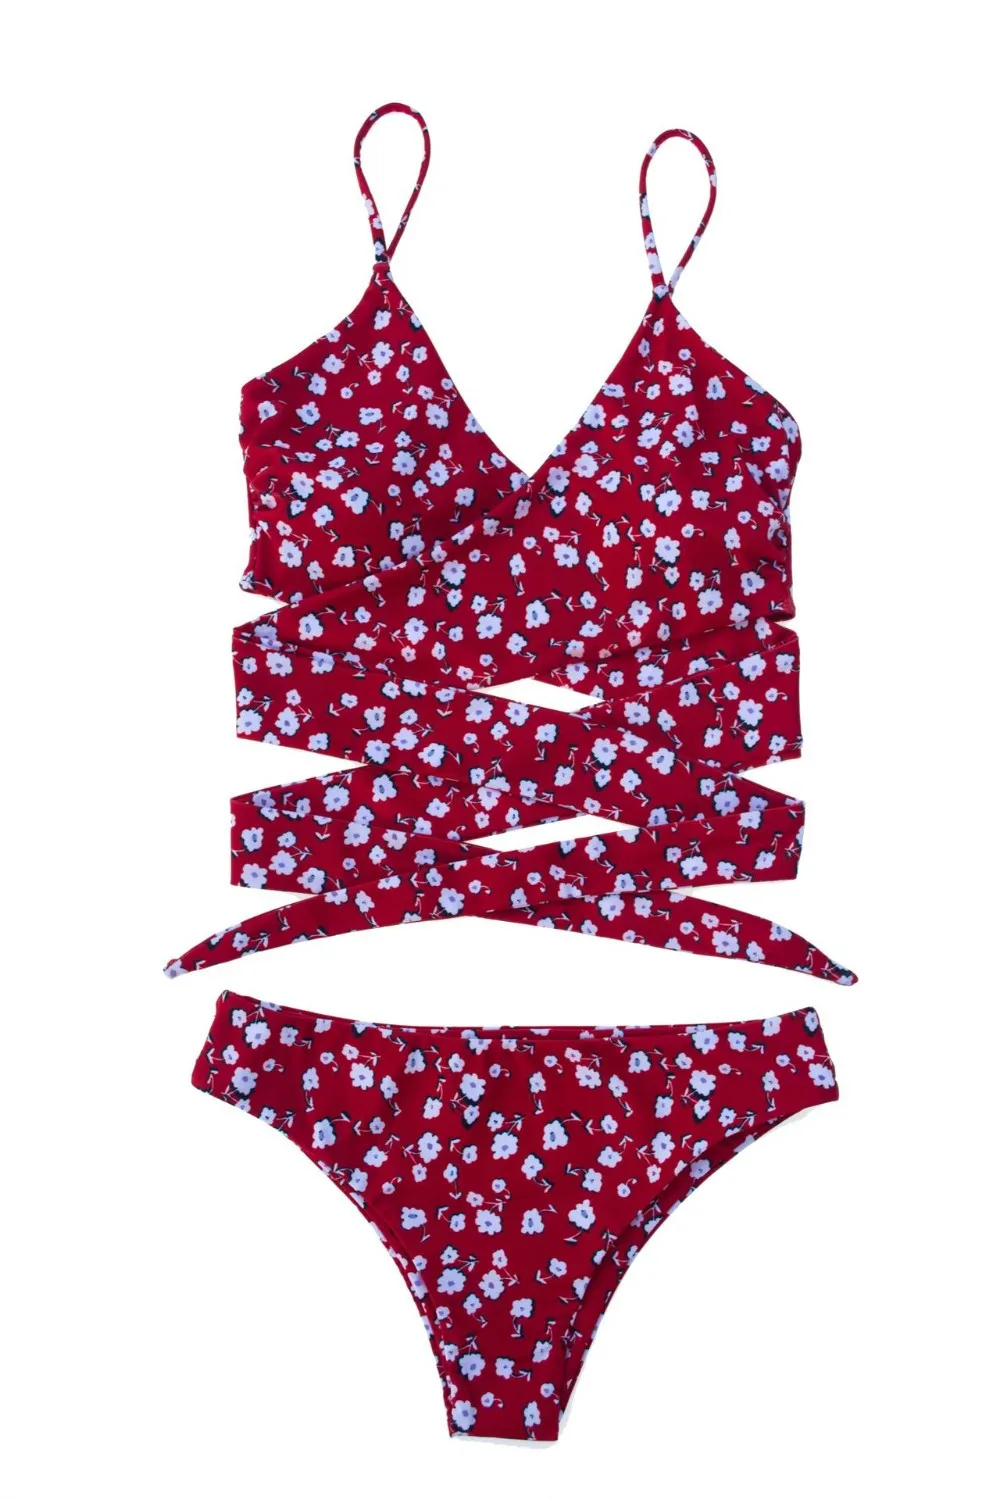 Recycled Fabrics Wholesale Maternity Womens Bikini Plus Size Swimwear ...